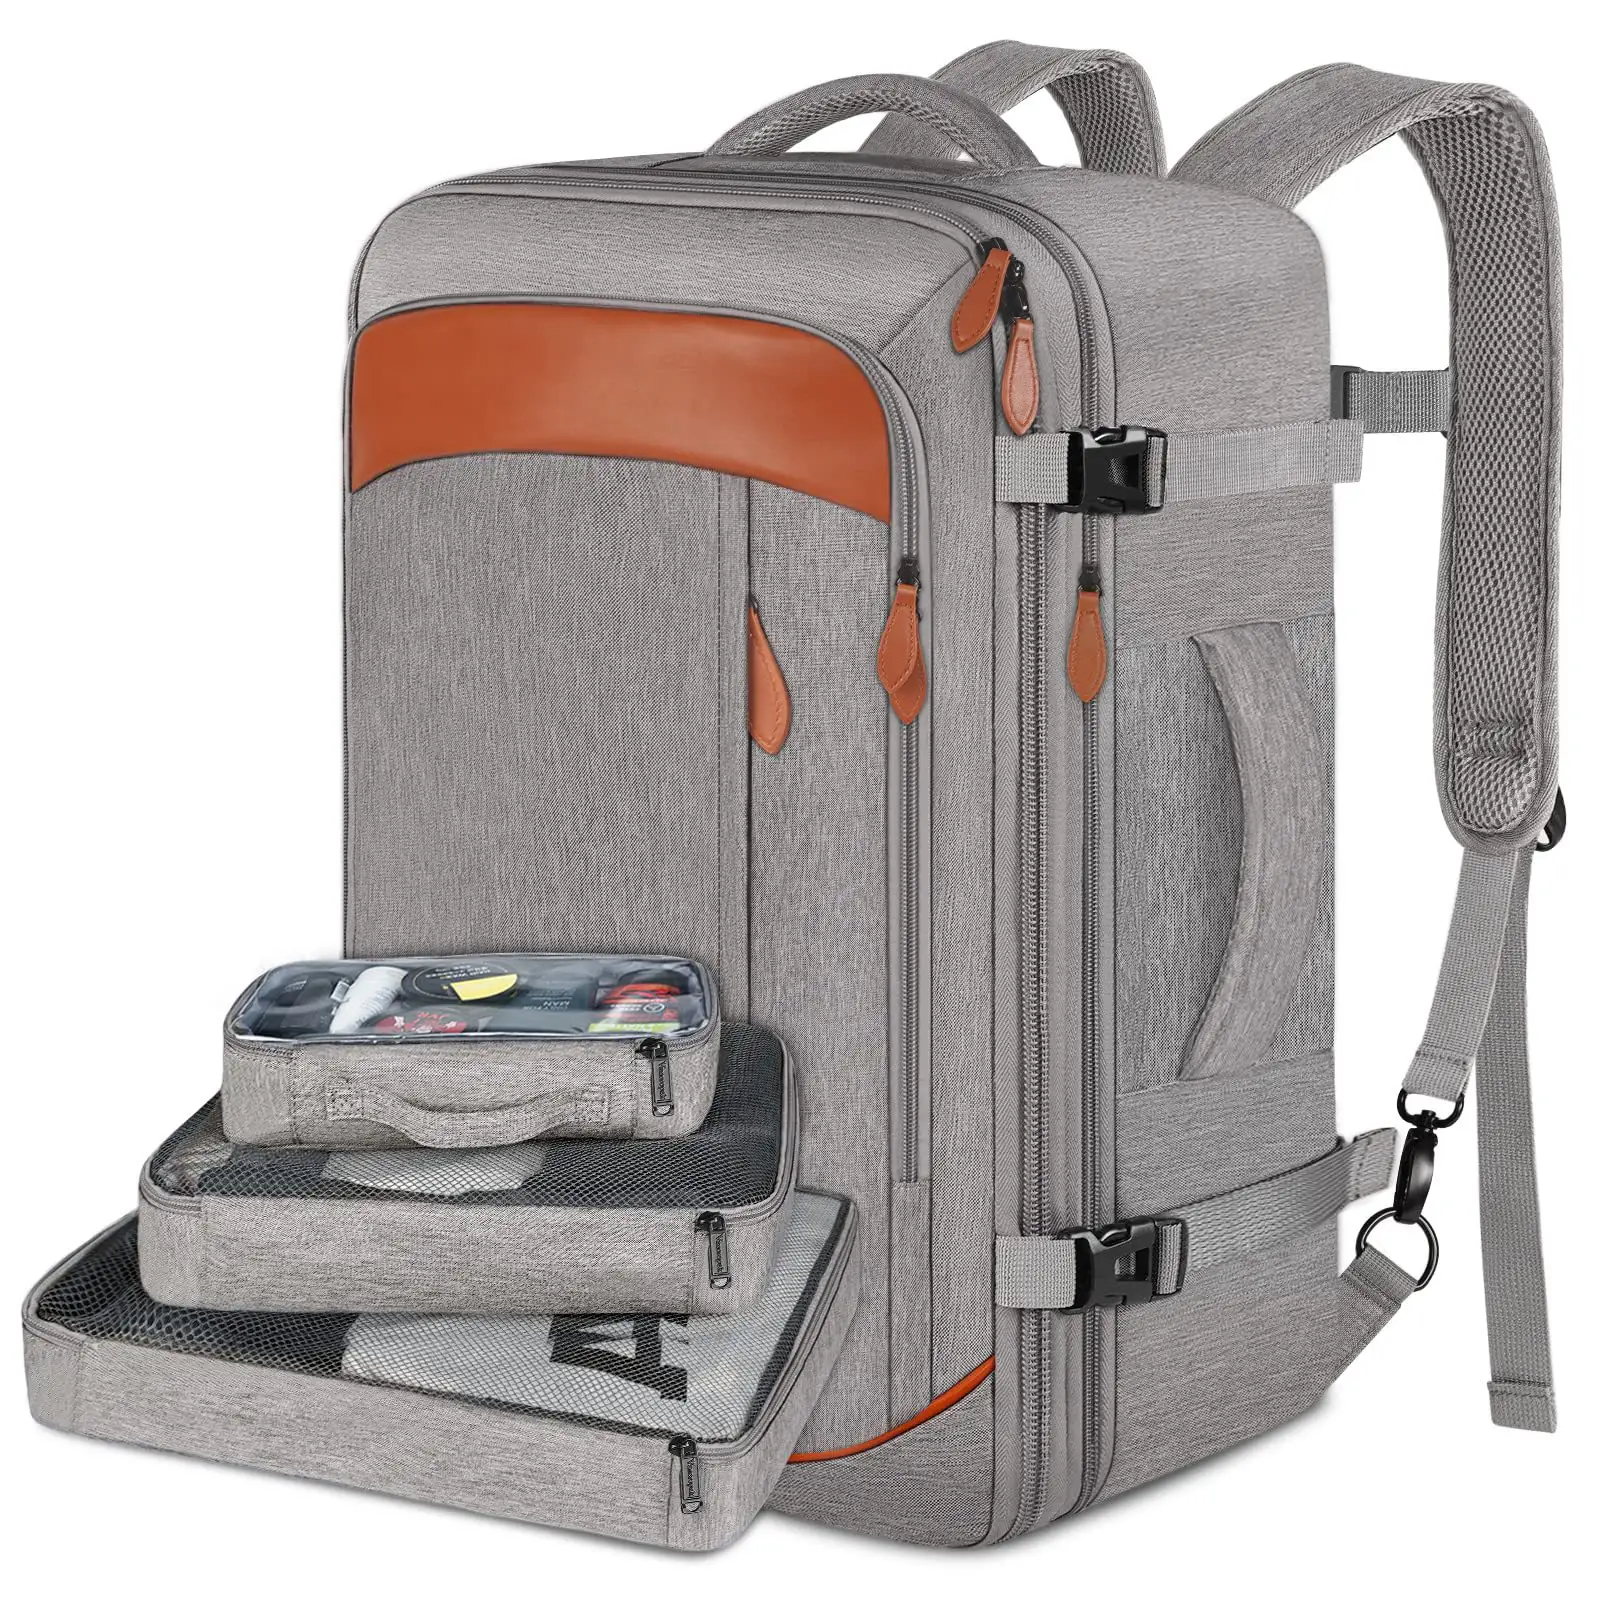 KBW744 tas punggung perjalanan barang pribadi tas punggung dengan 3 kemasan kubus diakui penerbangan bagasi tahan air Laptop